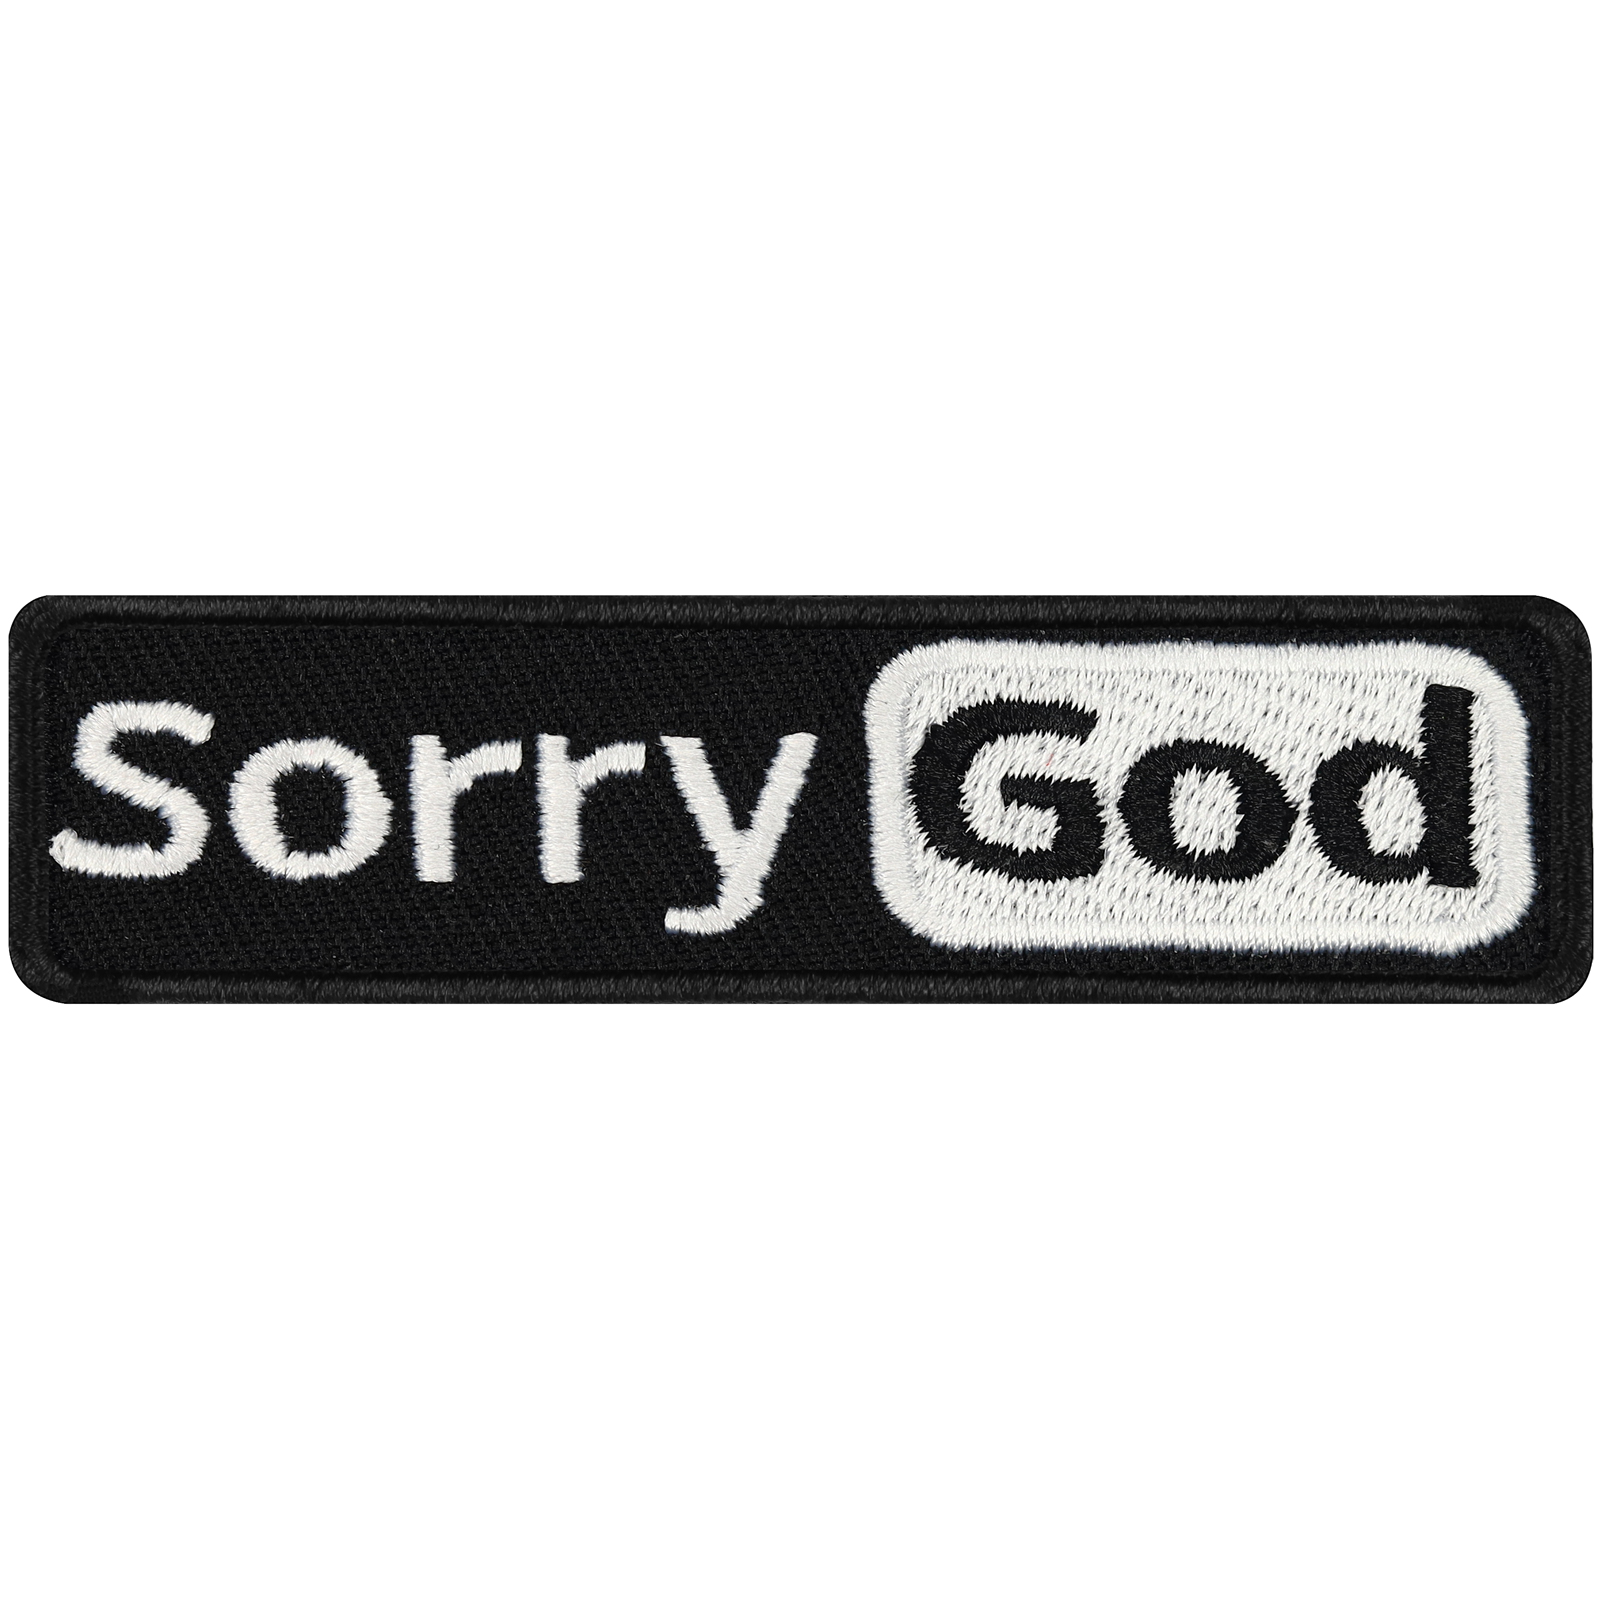 Sorry God - Patch